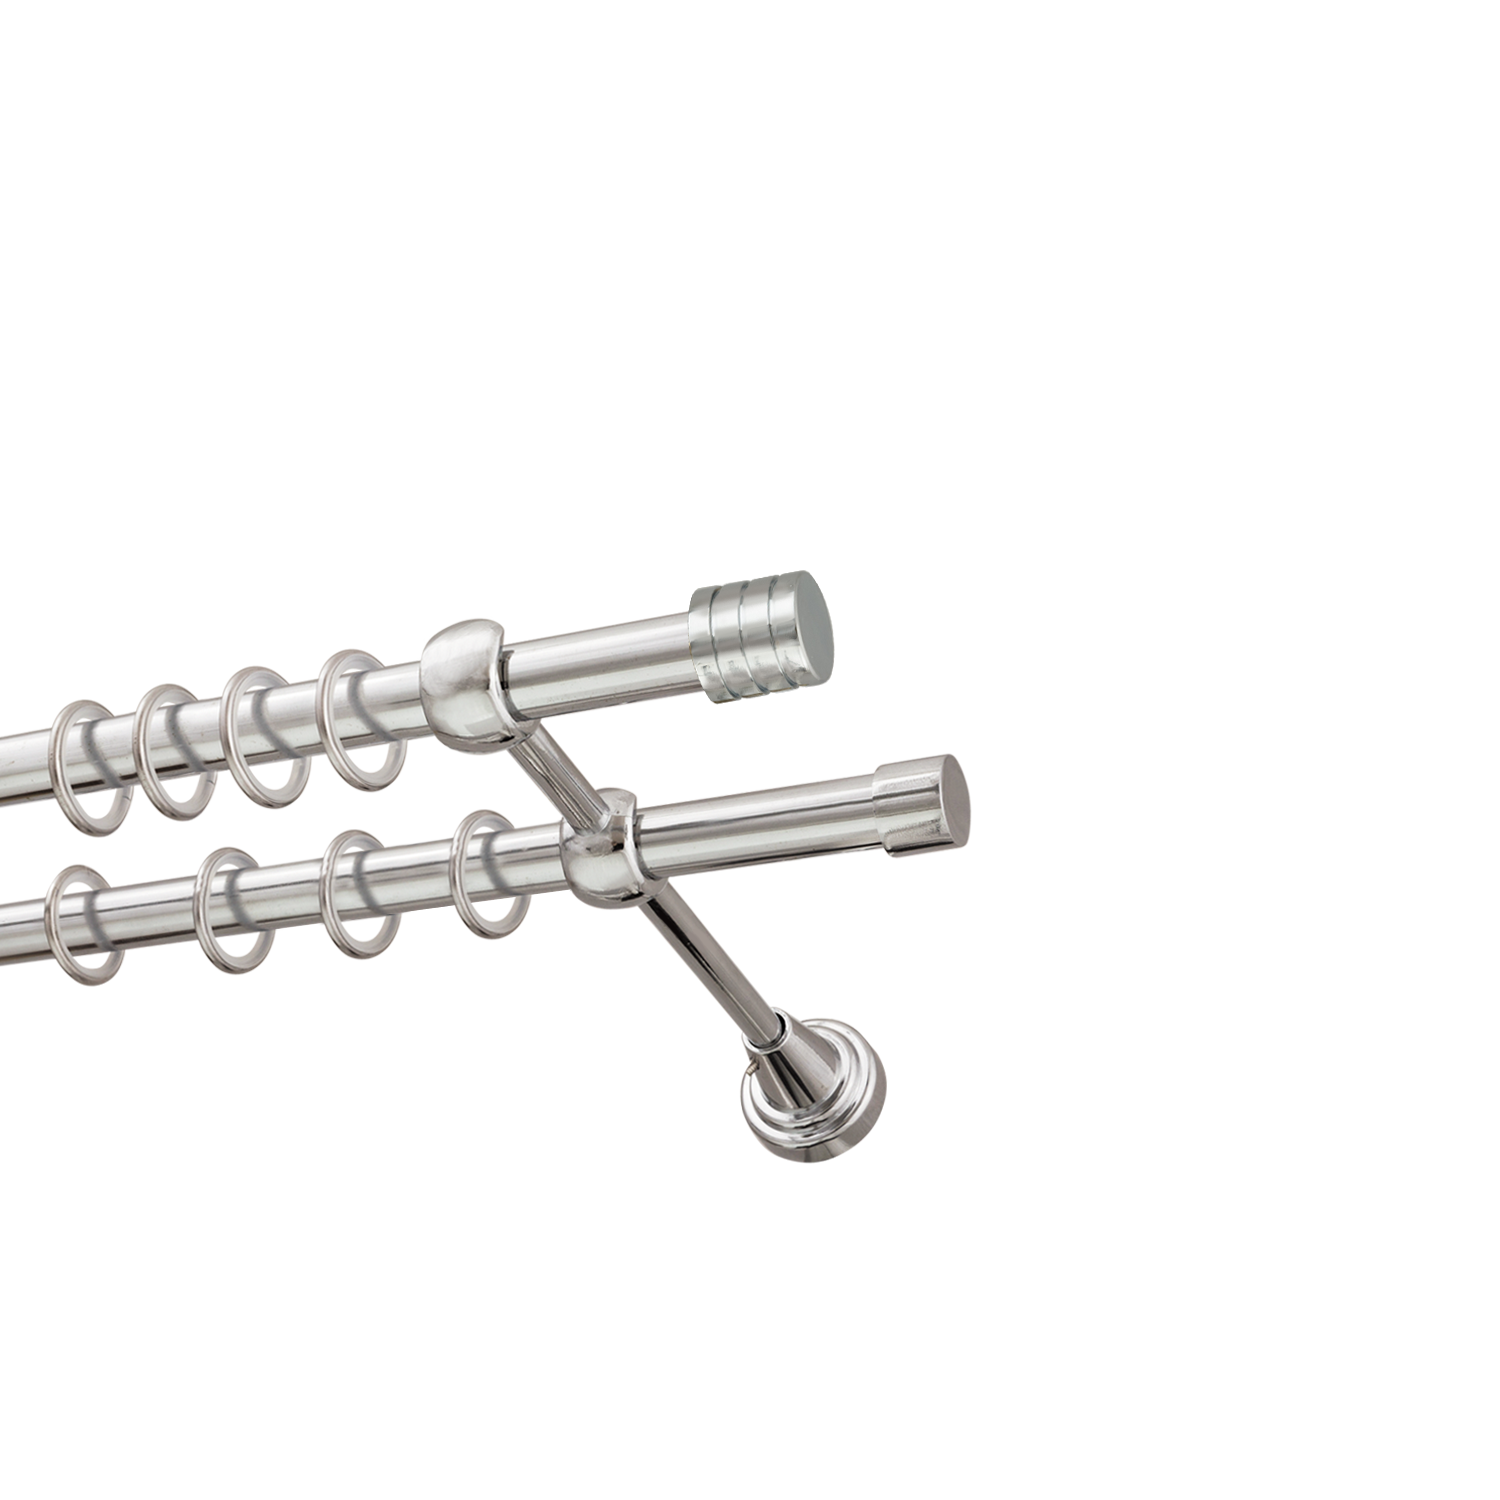 Металлический карниз для штор Подиум, двухрядный 16/16 мм, серебро, гладкая штанга, длина 200 см - фото Wikidecor.ru